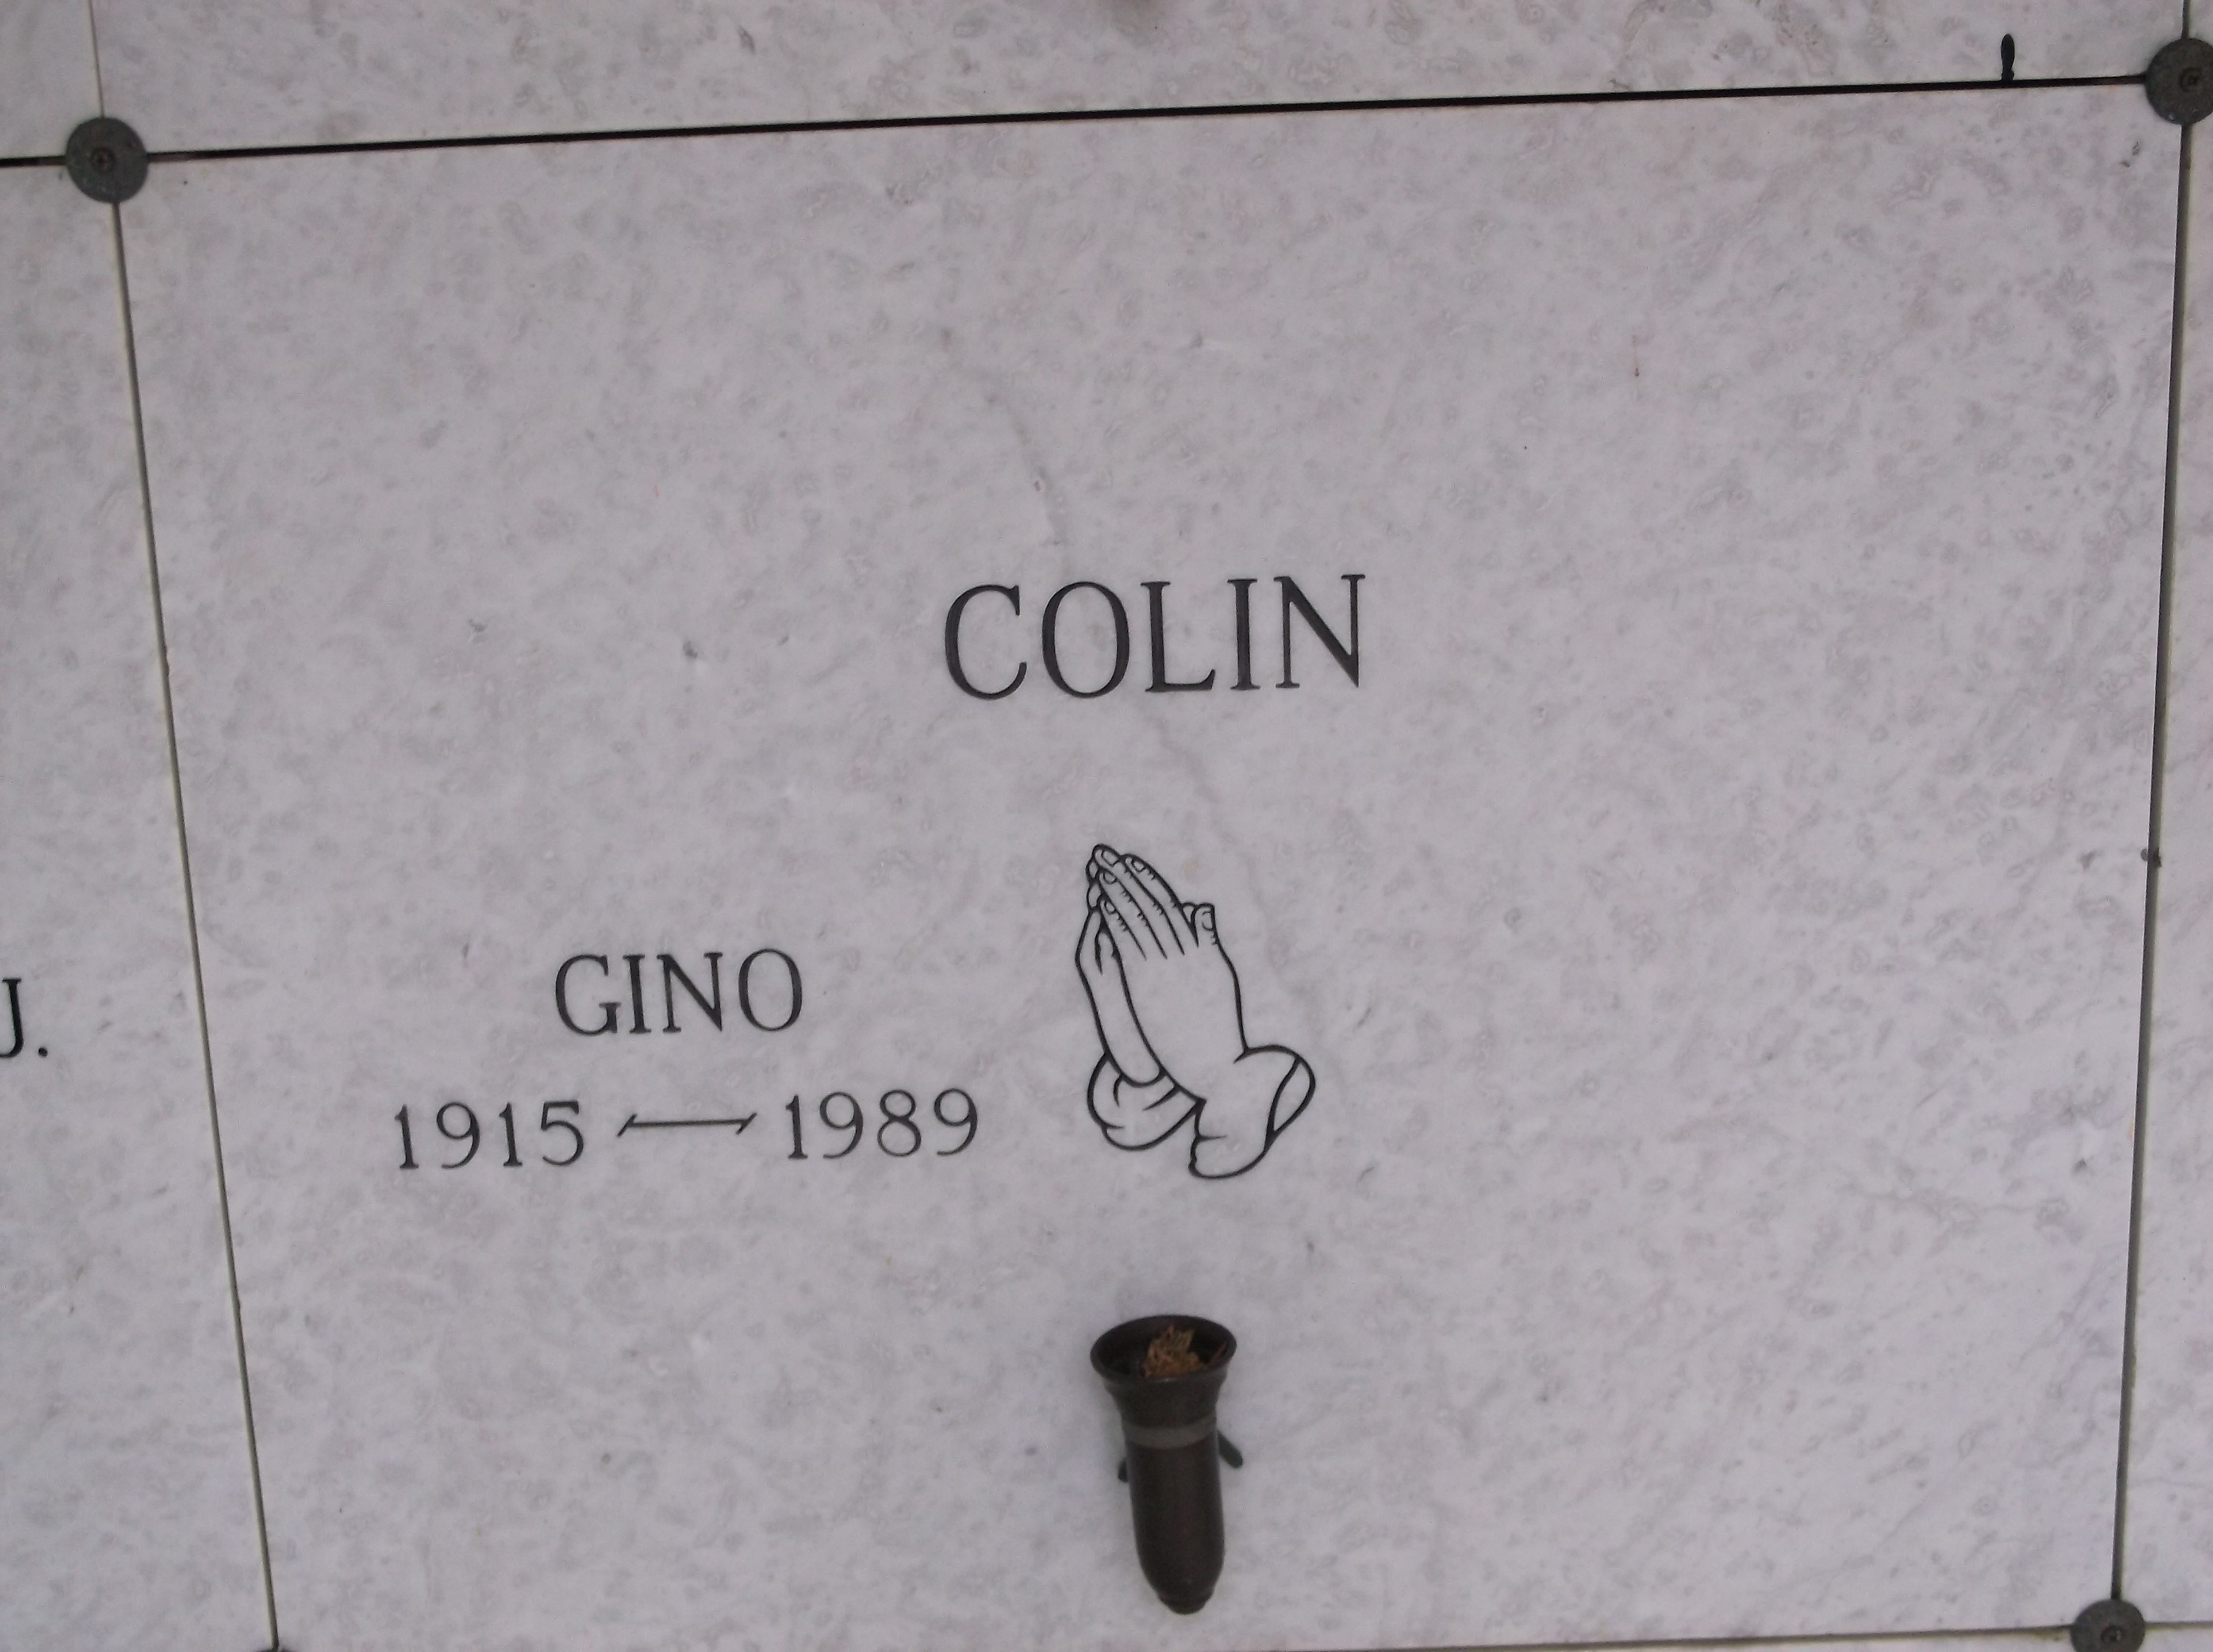 Gino Colin